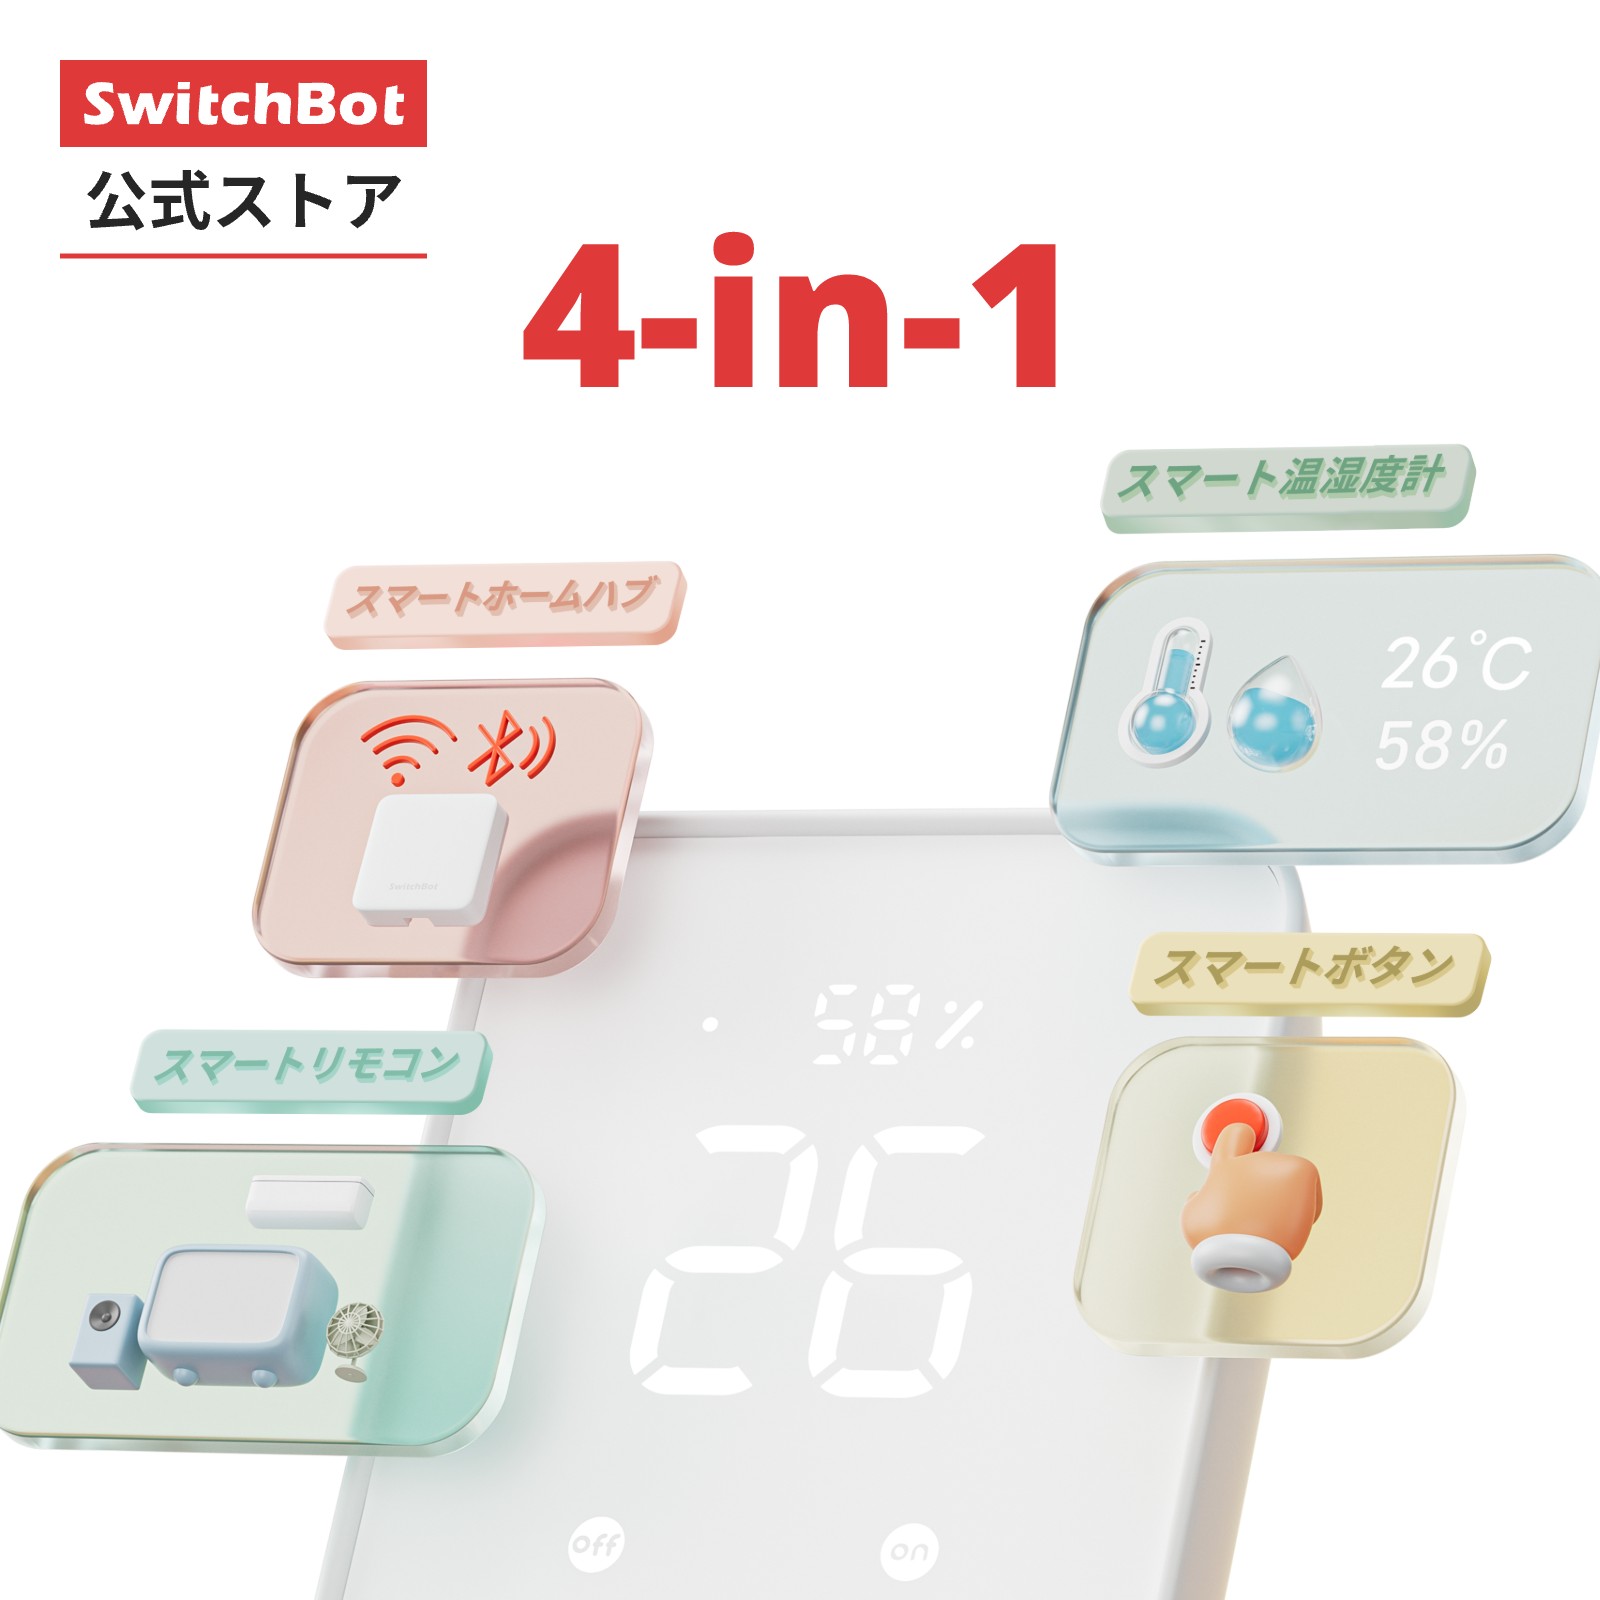 【レビュー特典あり】SwitchBot スマ